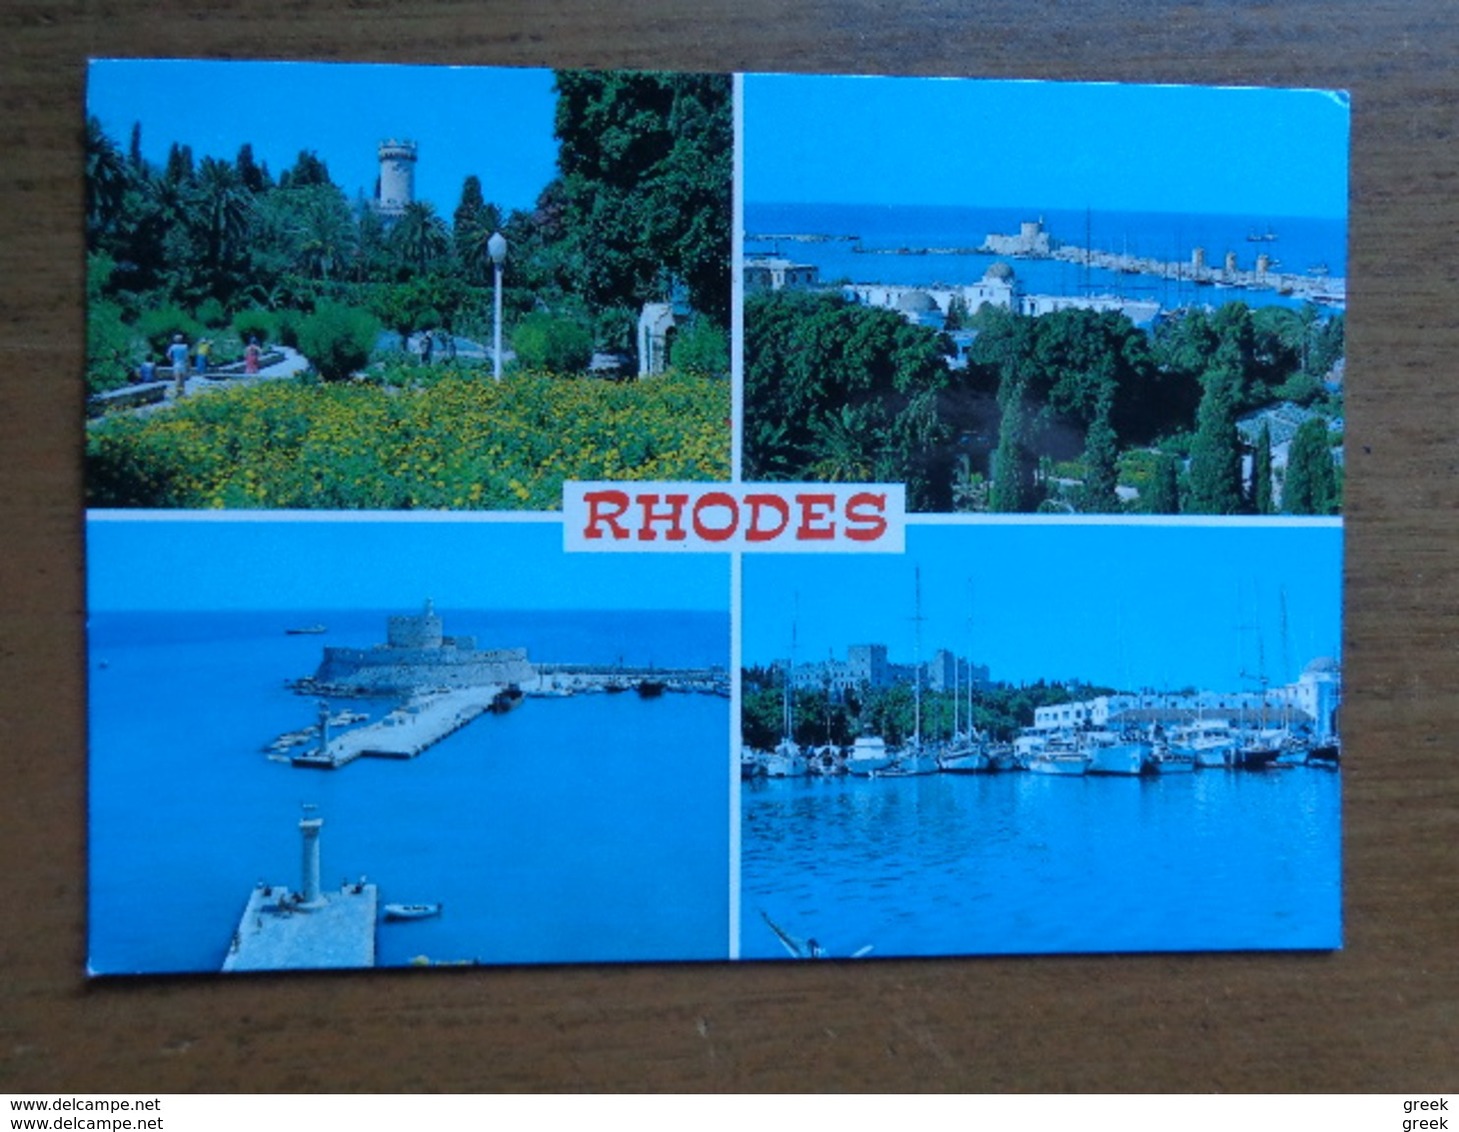 Doos postkaarten (4kg187) Allerlei landen en thema's (zie foto's, voir les photo's)